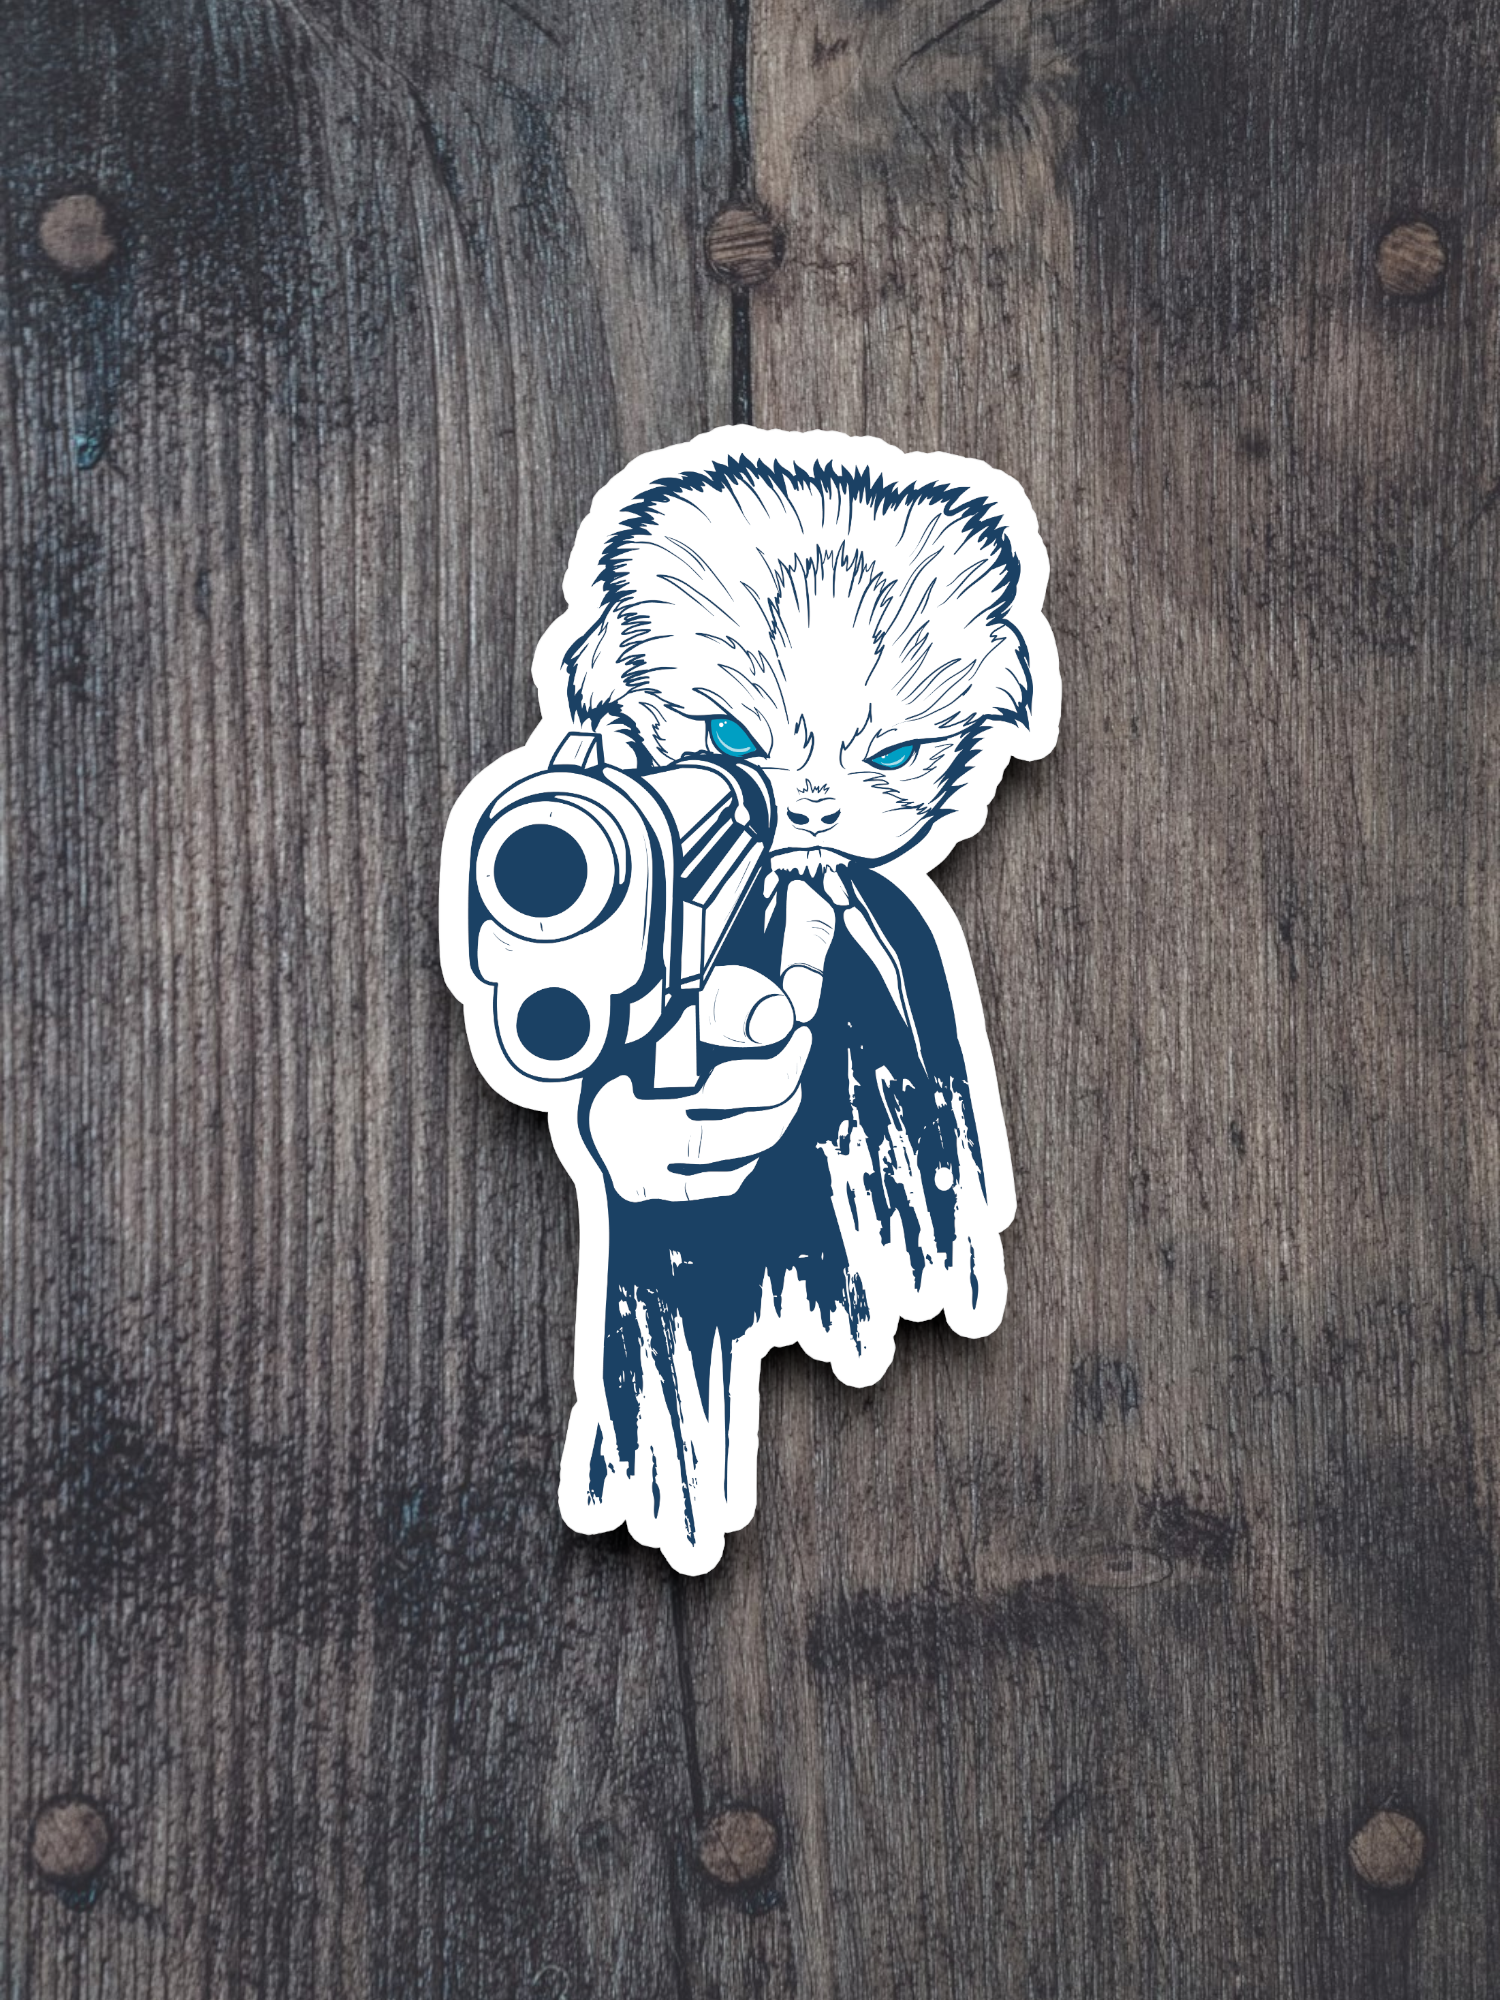 Animal and Gun Sticker